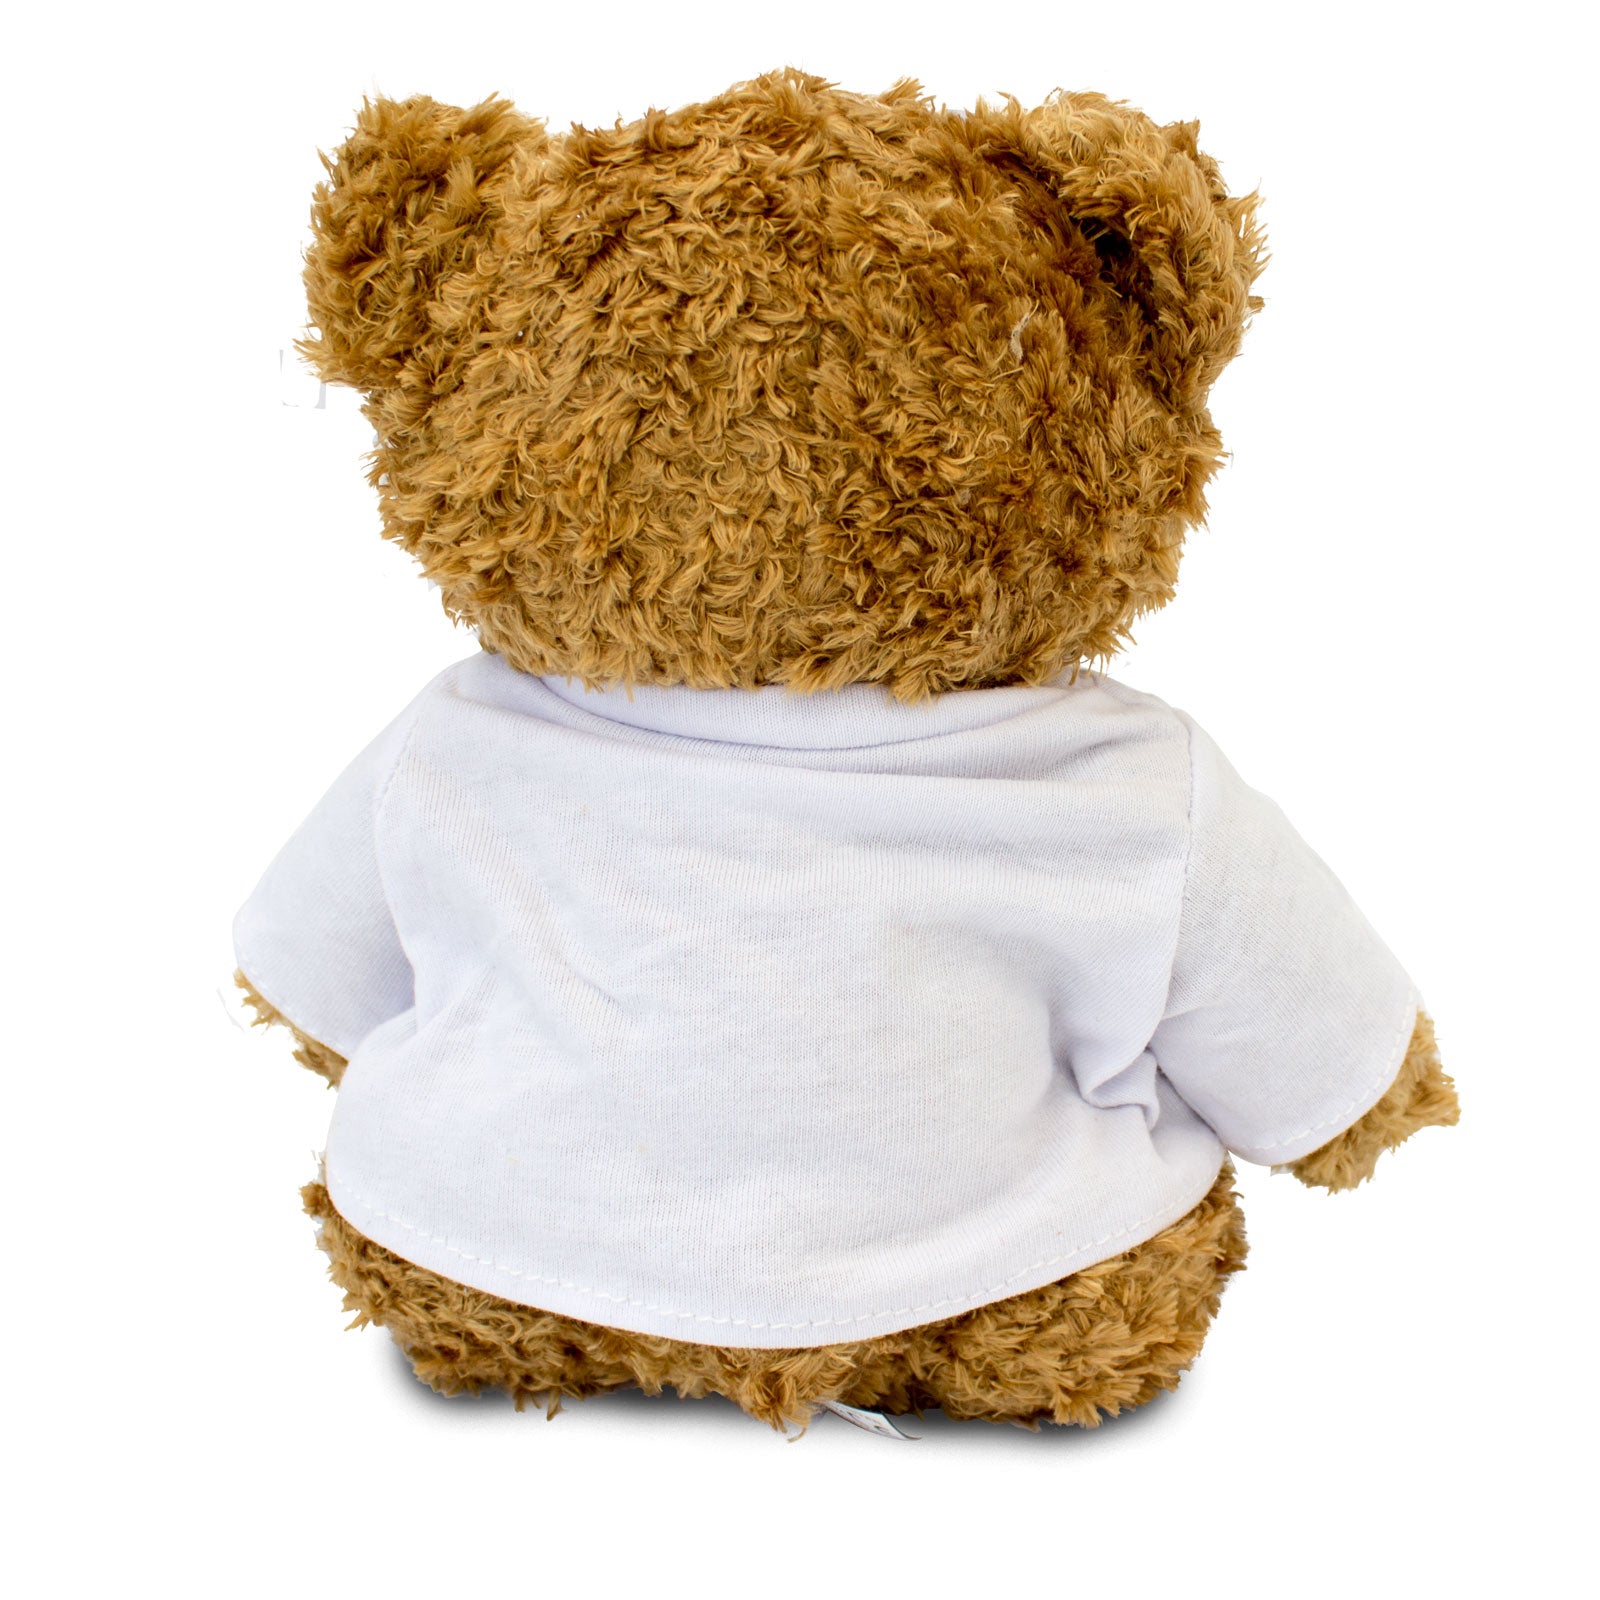 Get Well Soon Alexea - Teddy Bear